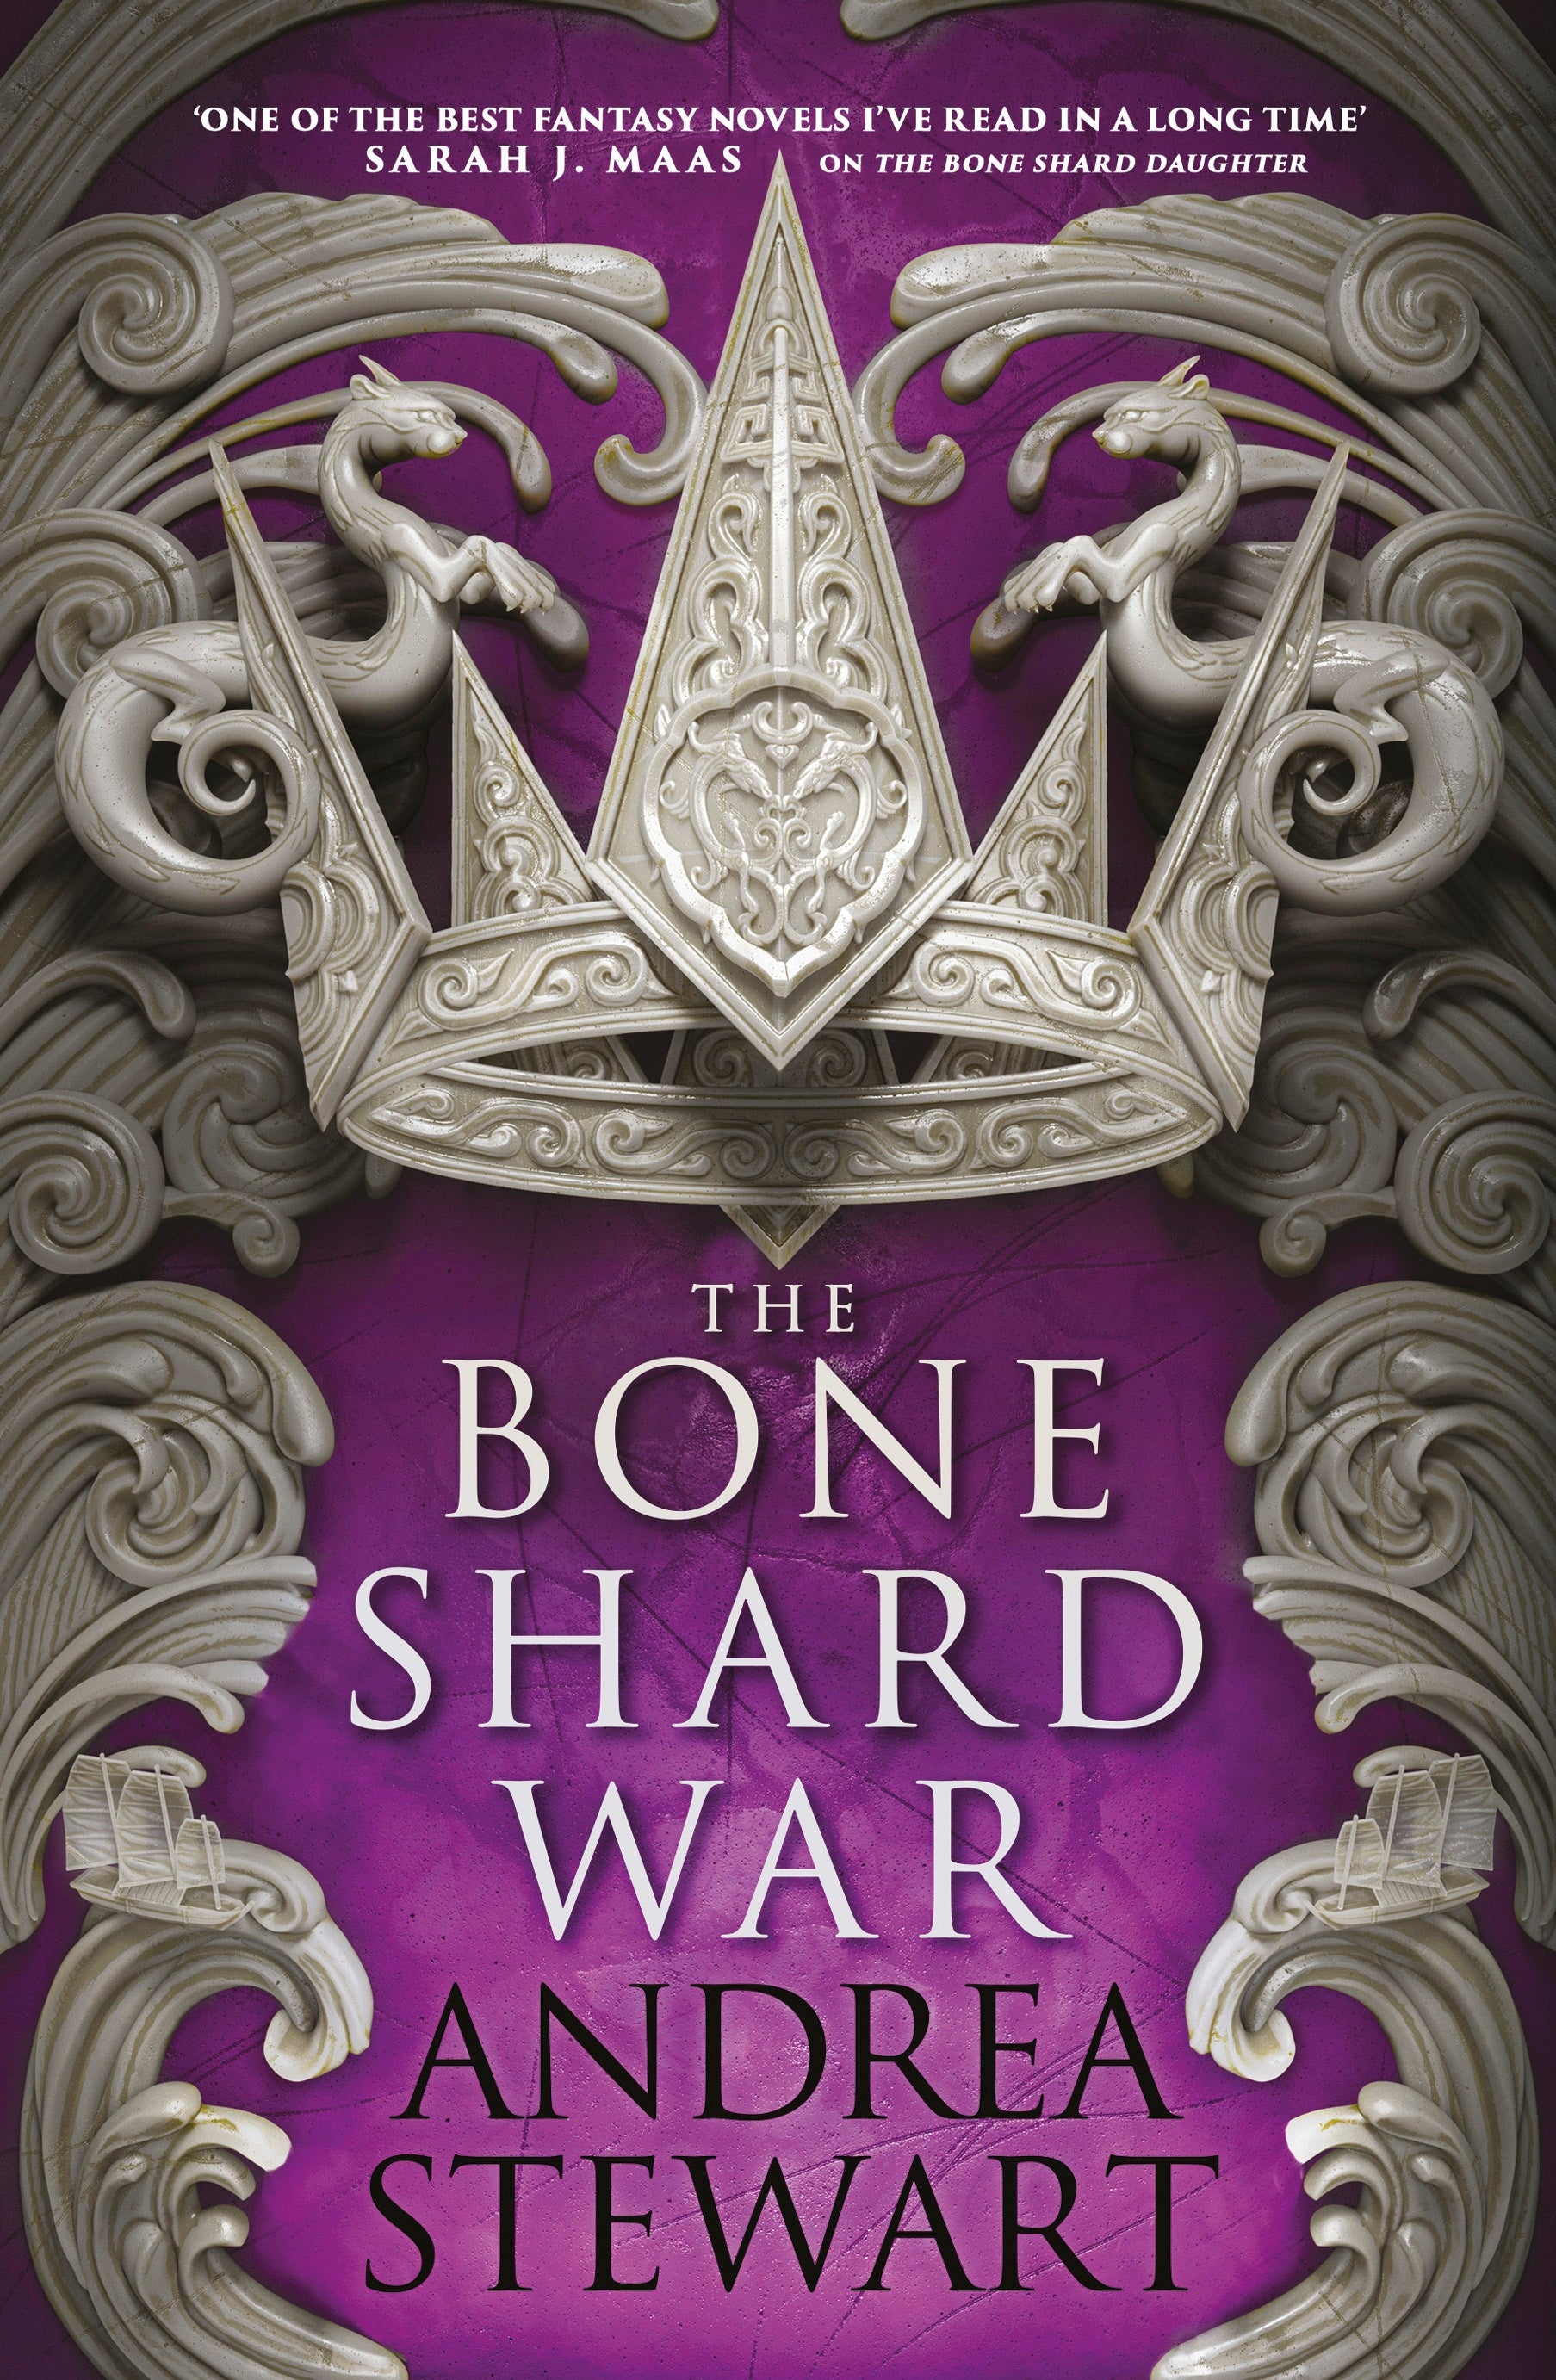 The Bone Shard War by Andrea Stewart